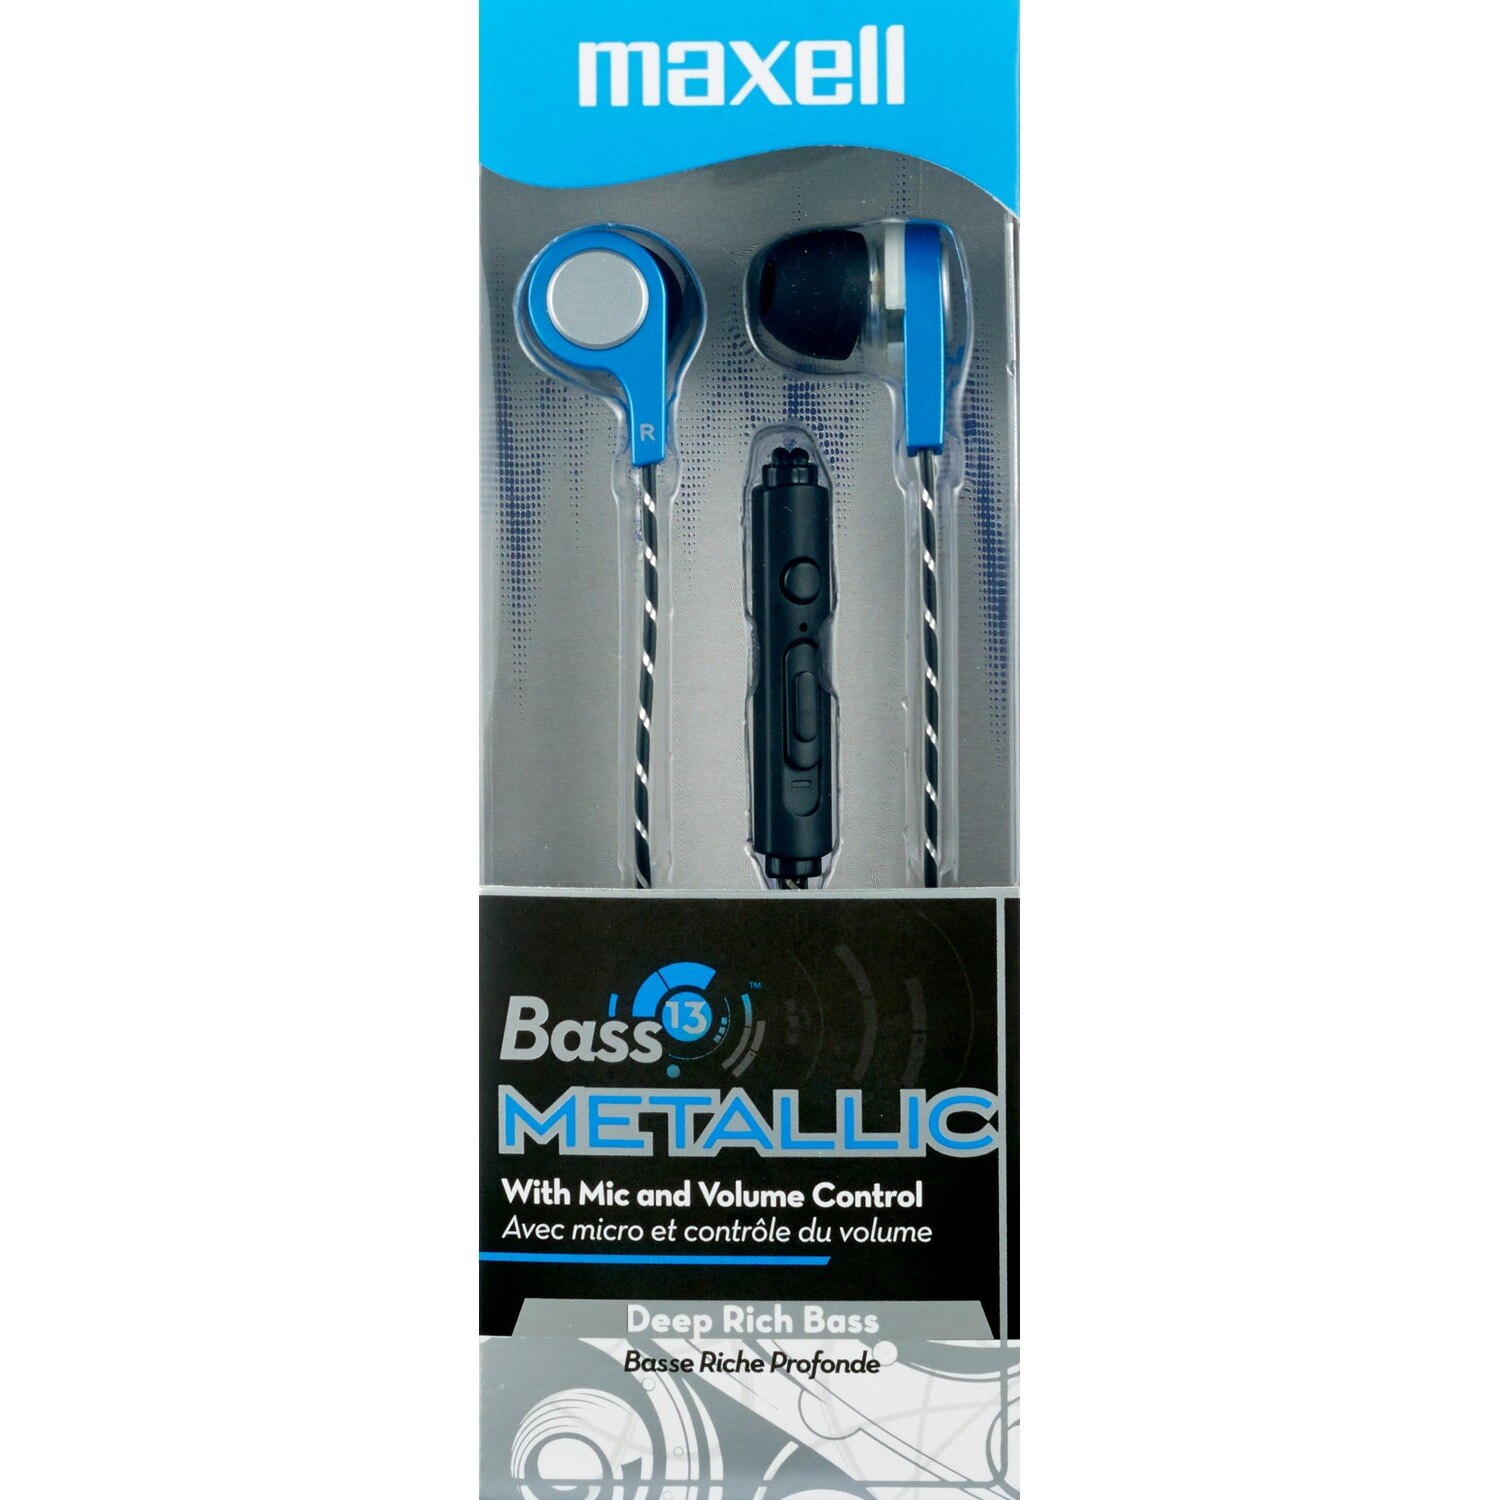 Maxell Bass 13 Metallic Earbuds